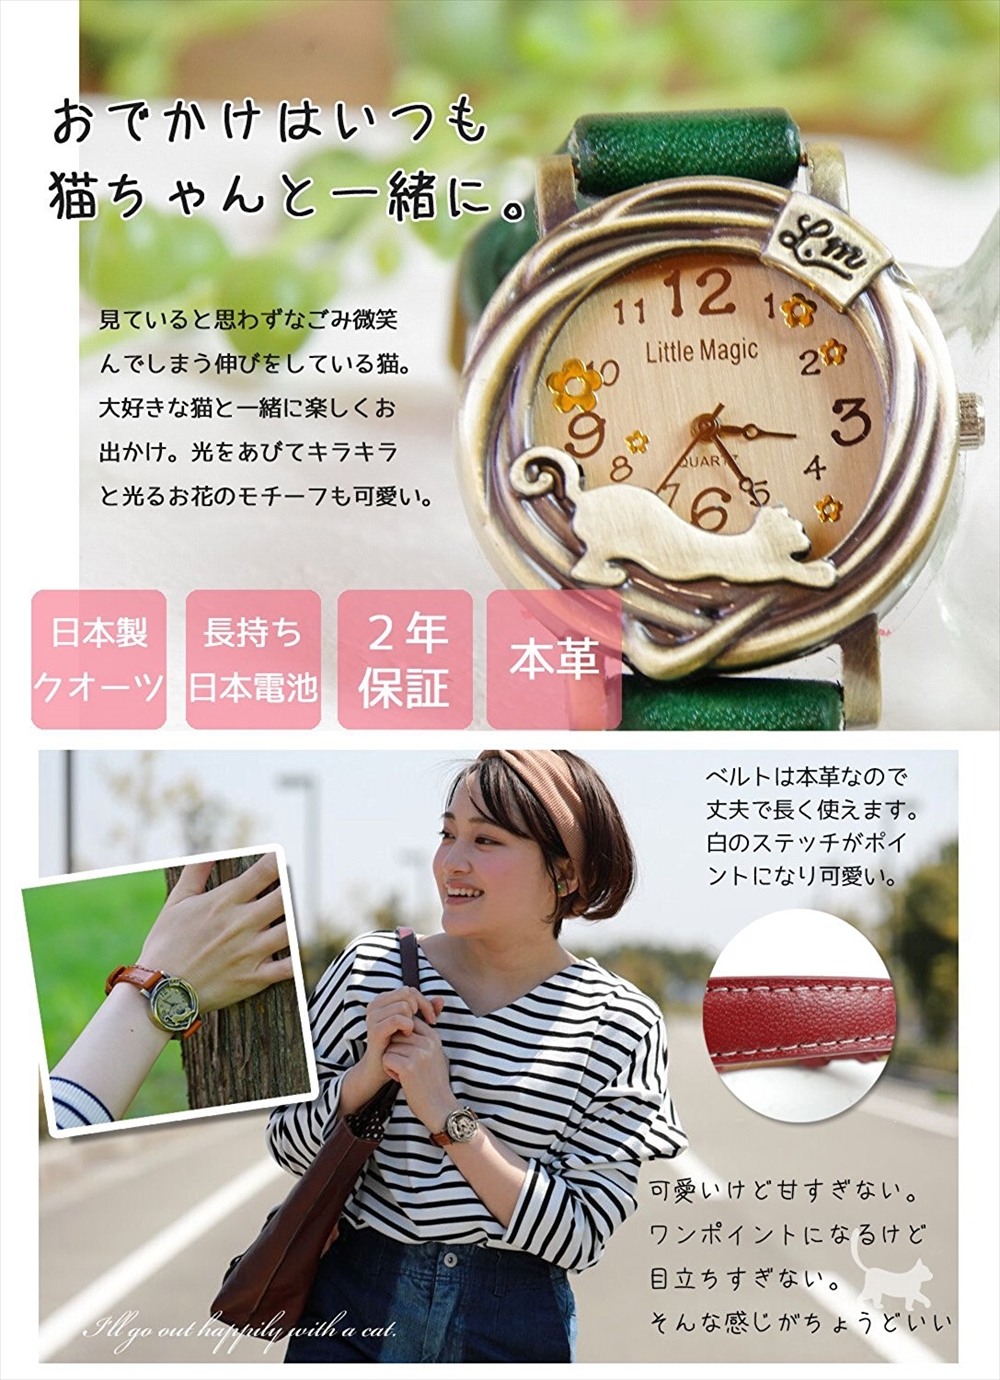 可愛い ねこ アンティーク 腕時計 レディース 猫 時計 子供と大人兼用 対応年齢 5歳 革ベルト 日本製クオーツ 公式 Little Magic Watch 自分らしくを楽しむ